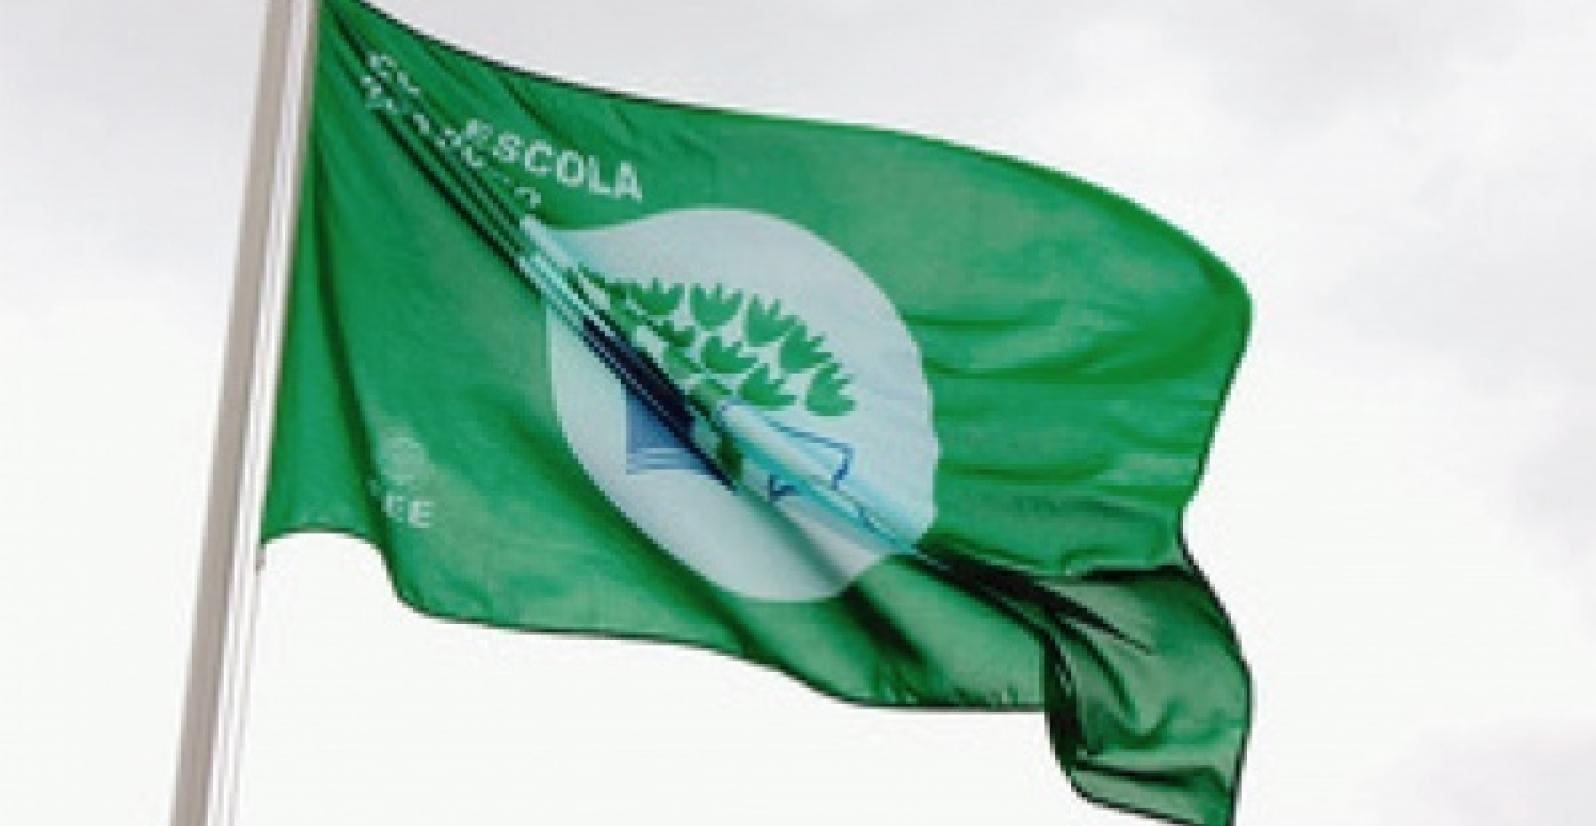 Bandeira Verde EcoEscola